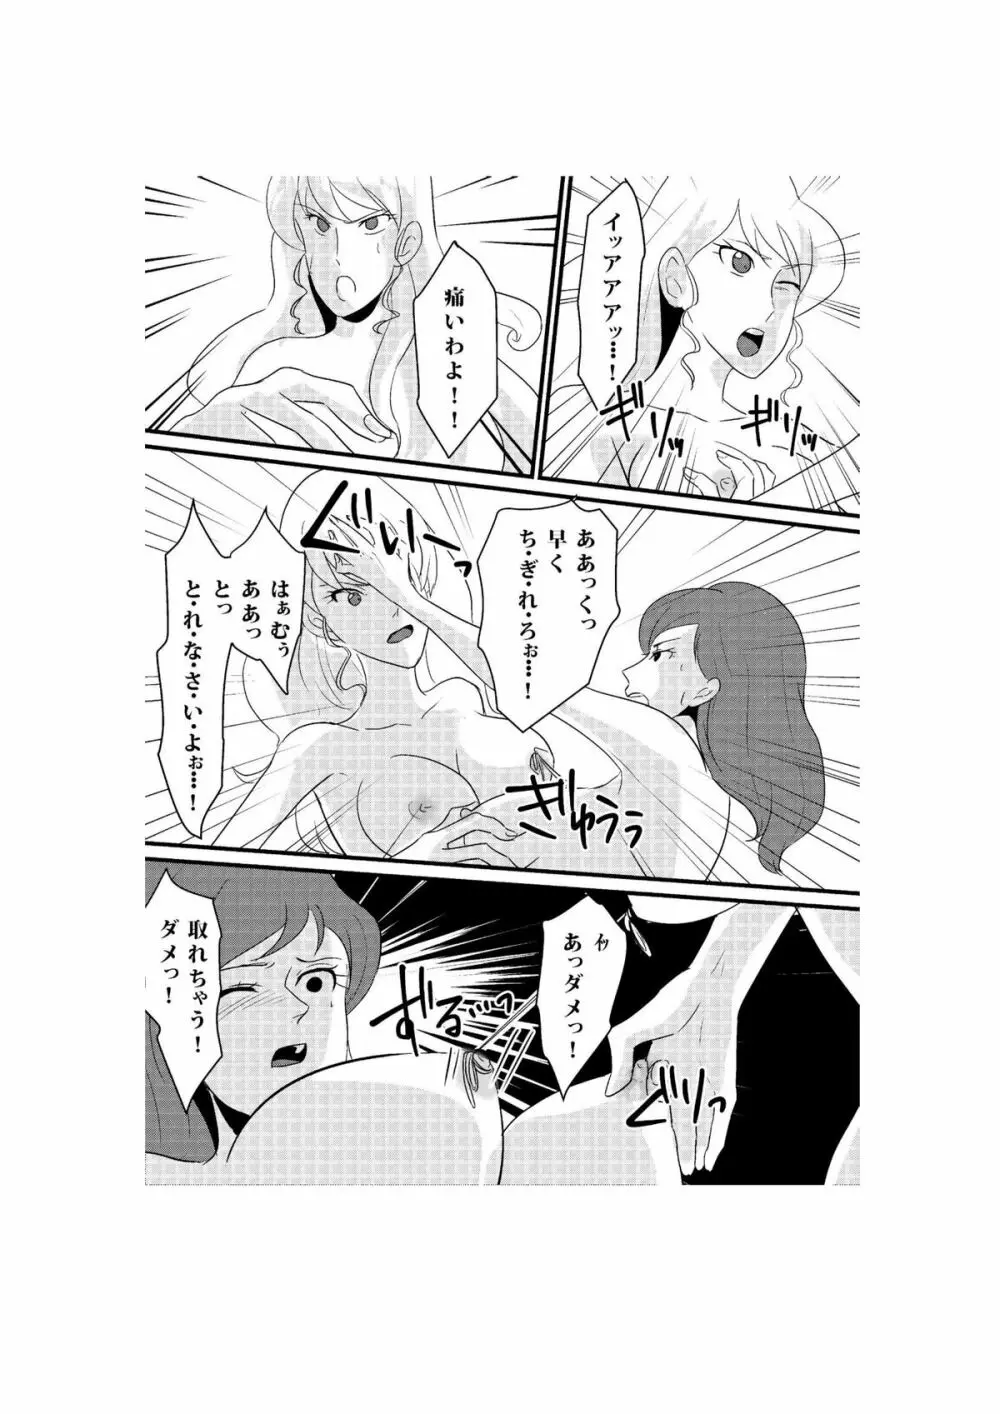 Fushi no Kyouten Ureta Onna no Tatakai - Fujiko VS Emmanuelle - page10